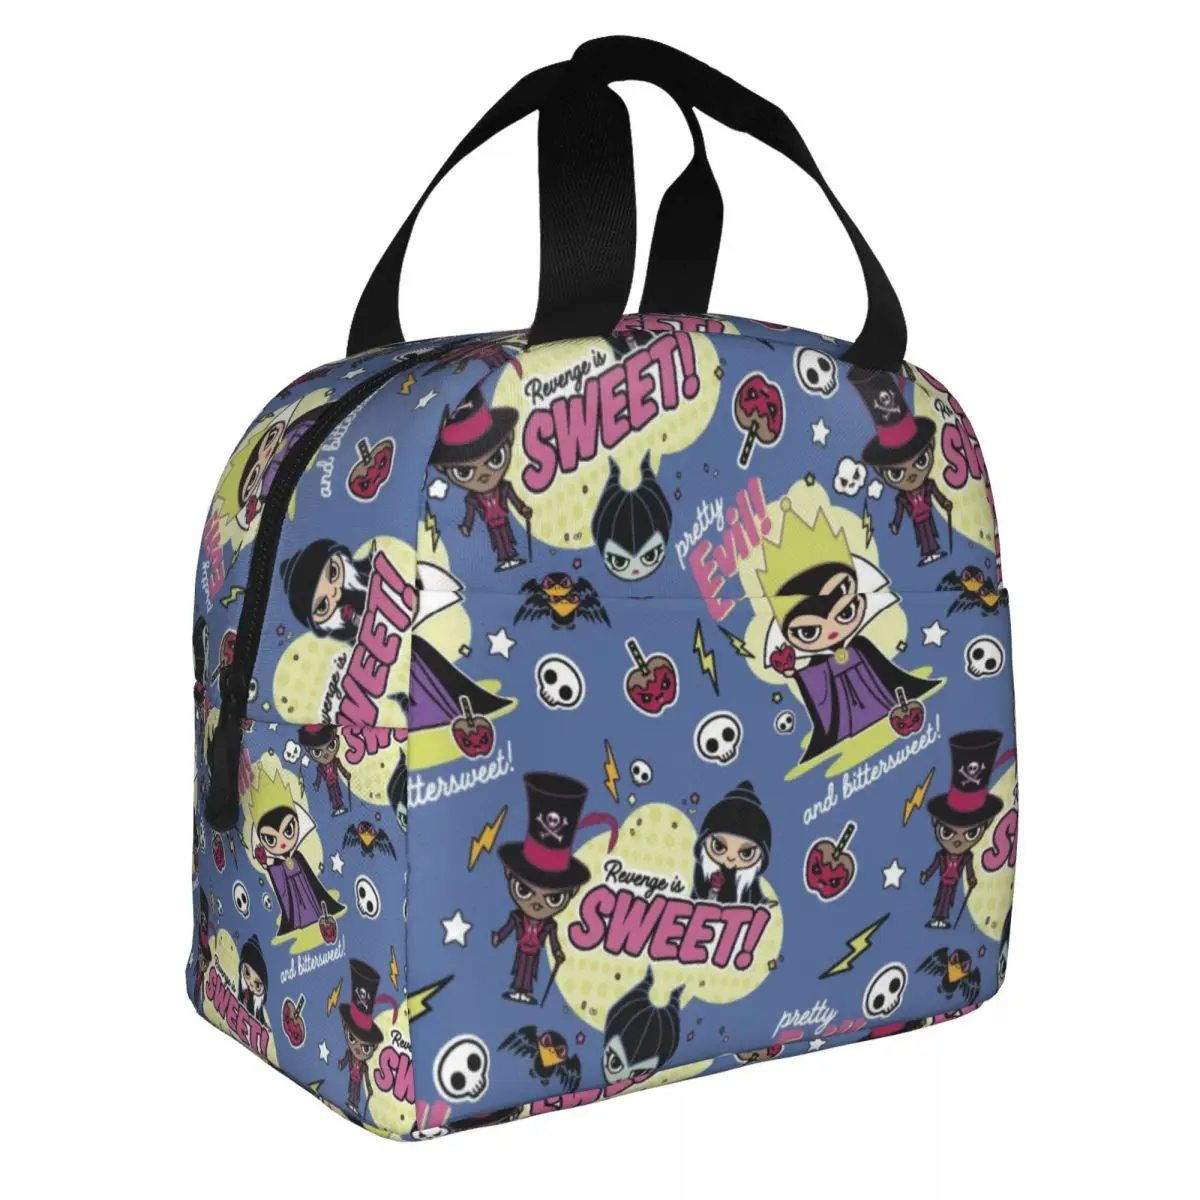 Disney Villains Kawaii Pretty Evil Изолированная сумка для ланча, термосумка, контейнер для еды, Переносная сумка-ланч-бокс для мужчин и женщин, школа